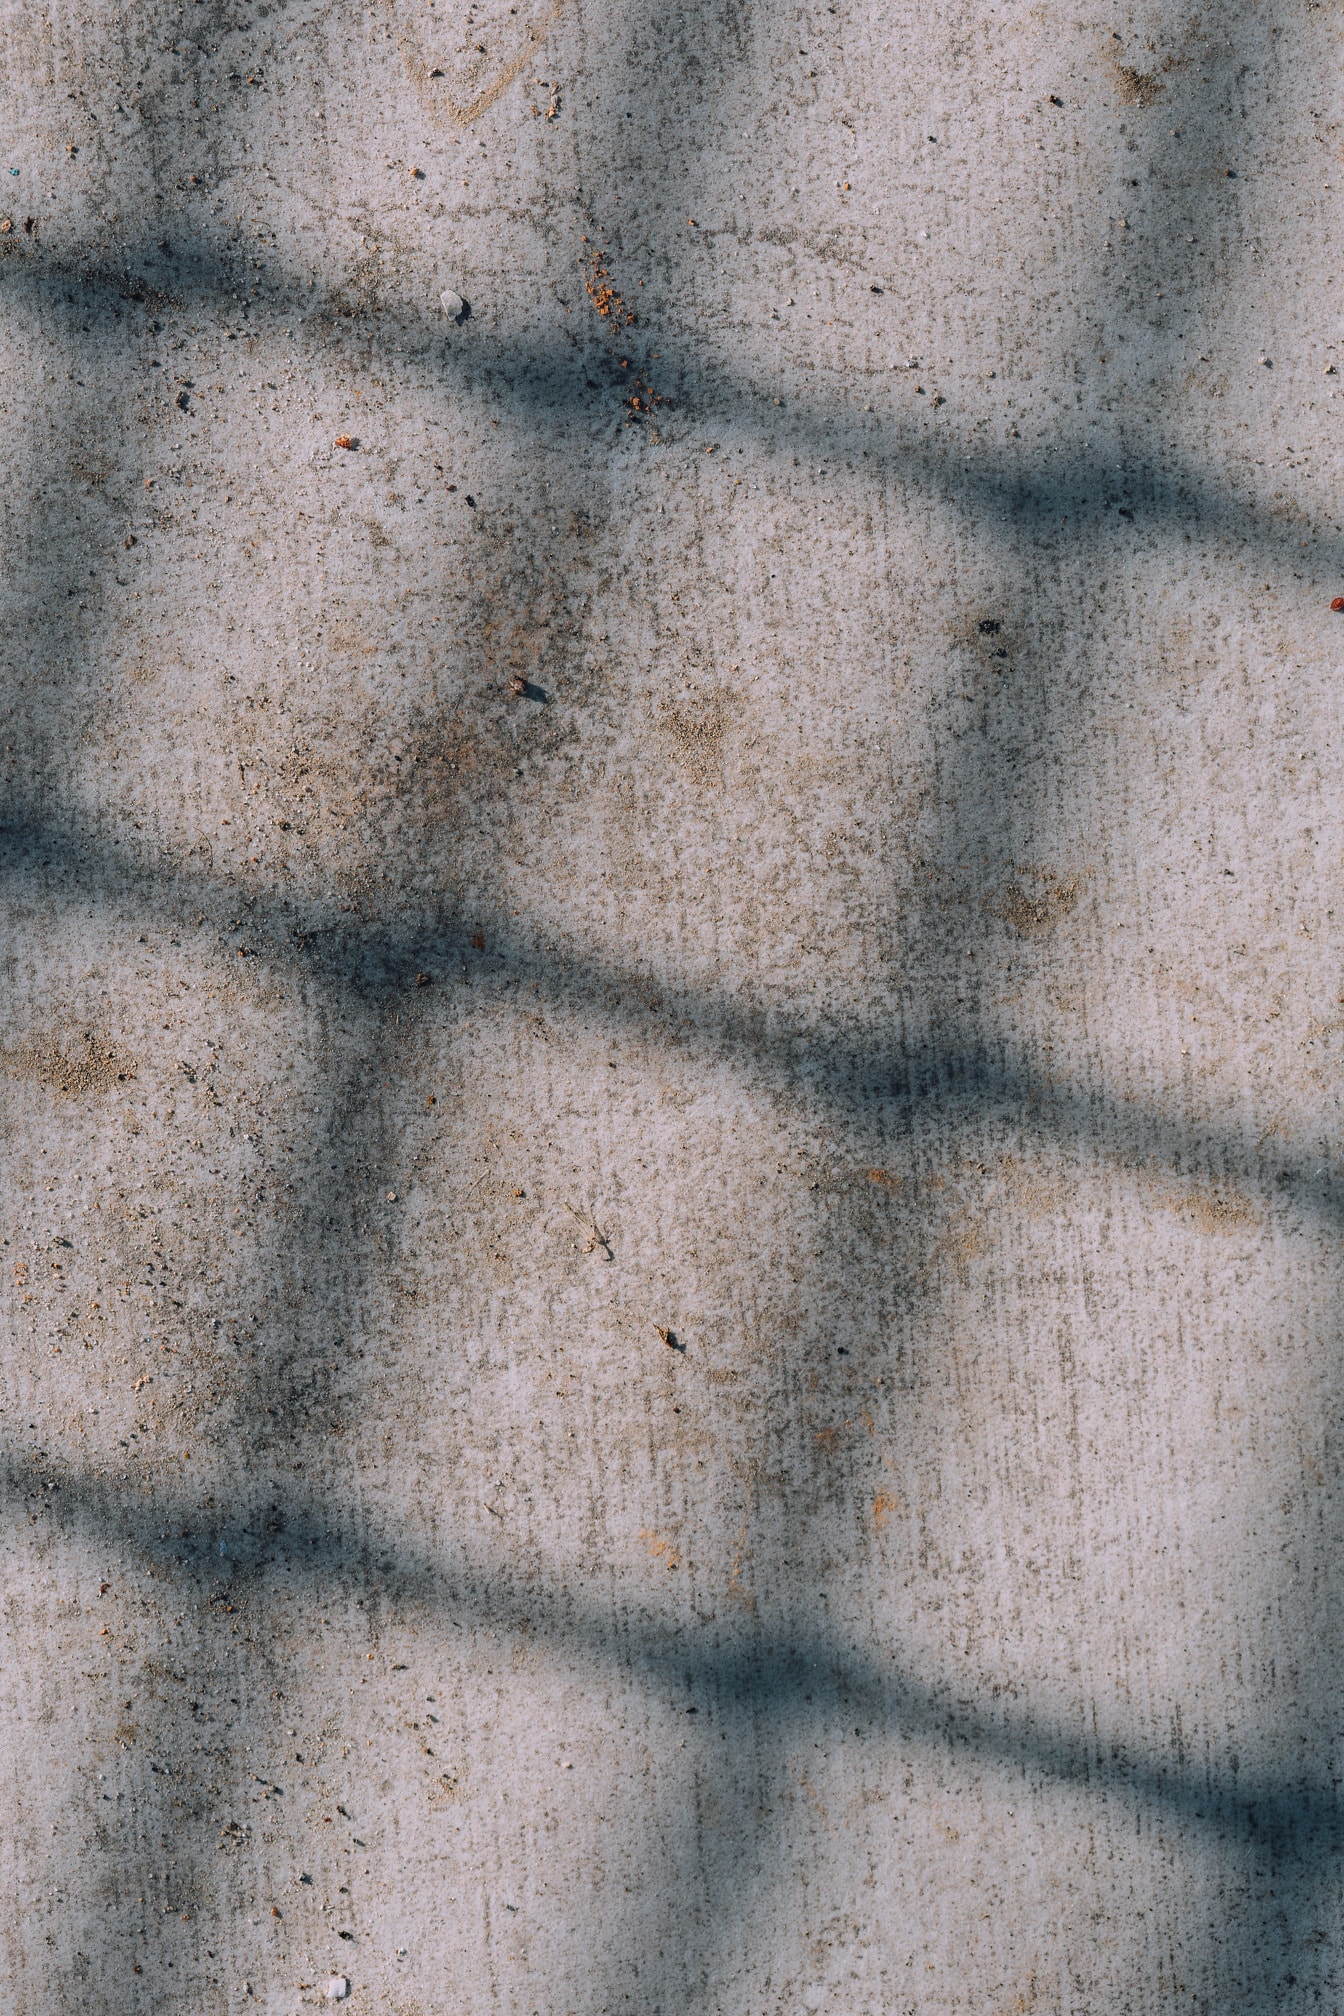 Bóng ở dạng hình chữ nhật trên bề mặt bê tông bẩn có vết bẩn